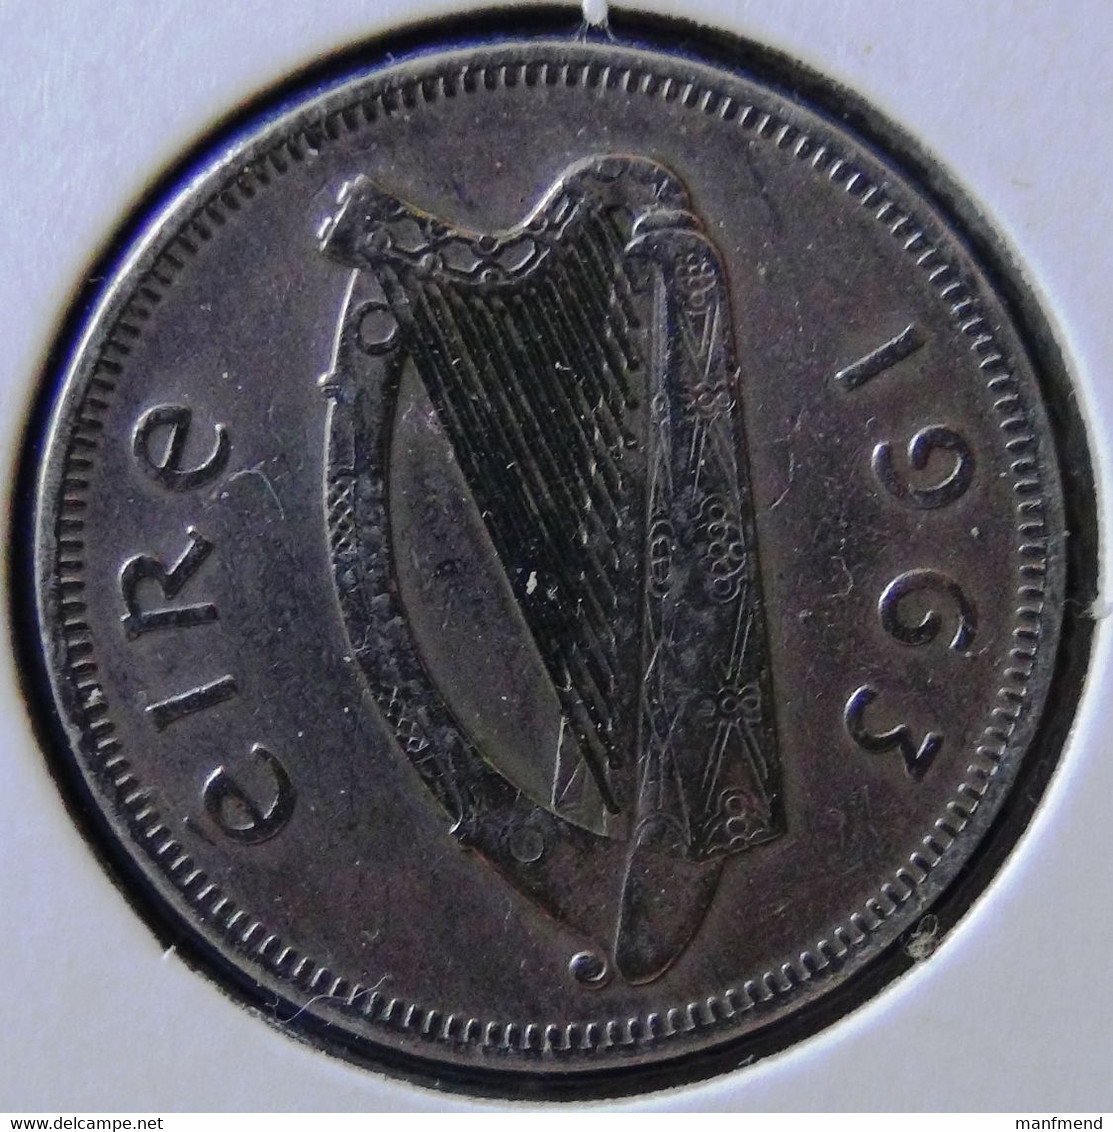 Ireland - 1963 - 1 Florin - KM 15a - Vz - Ireland